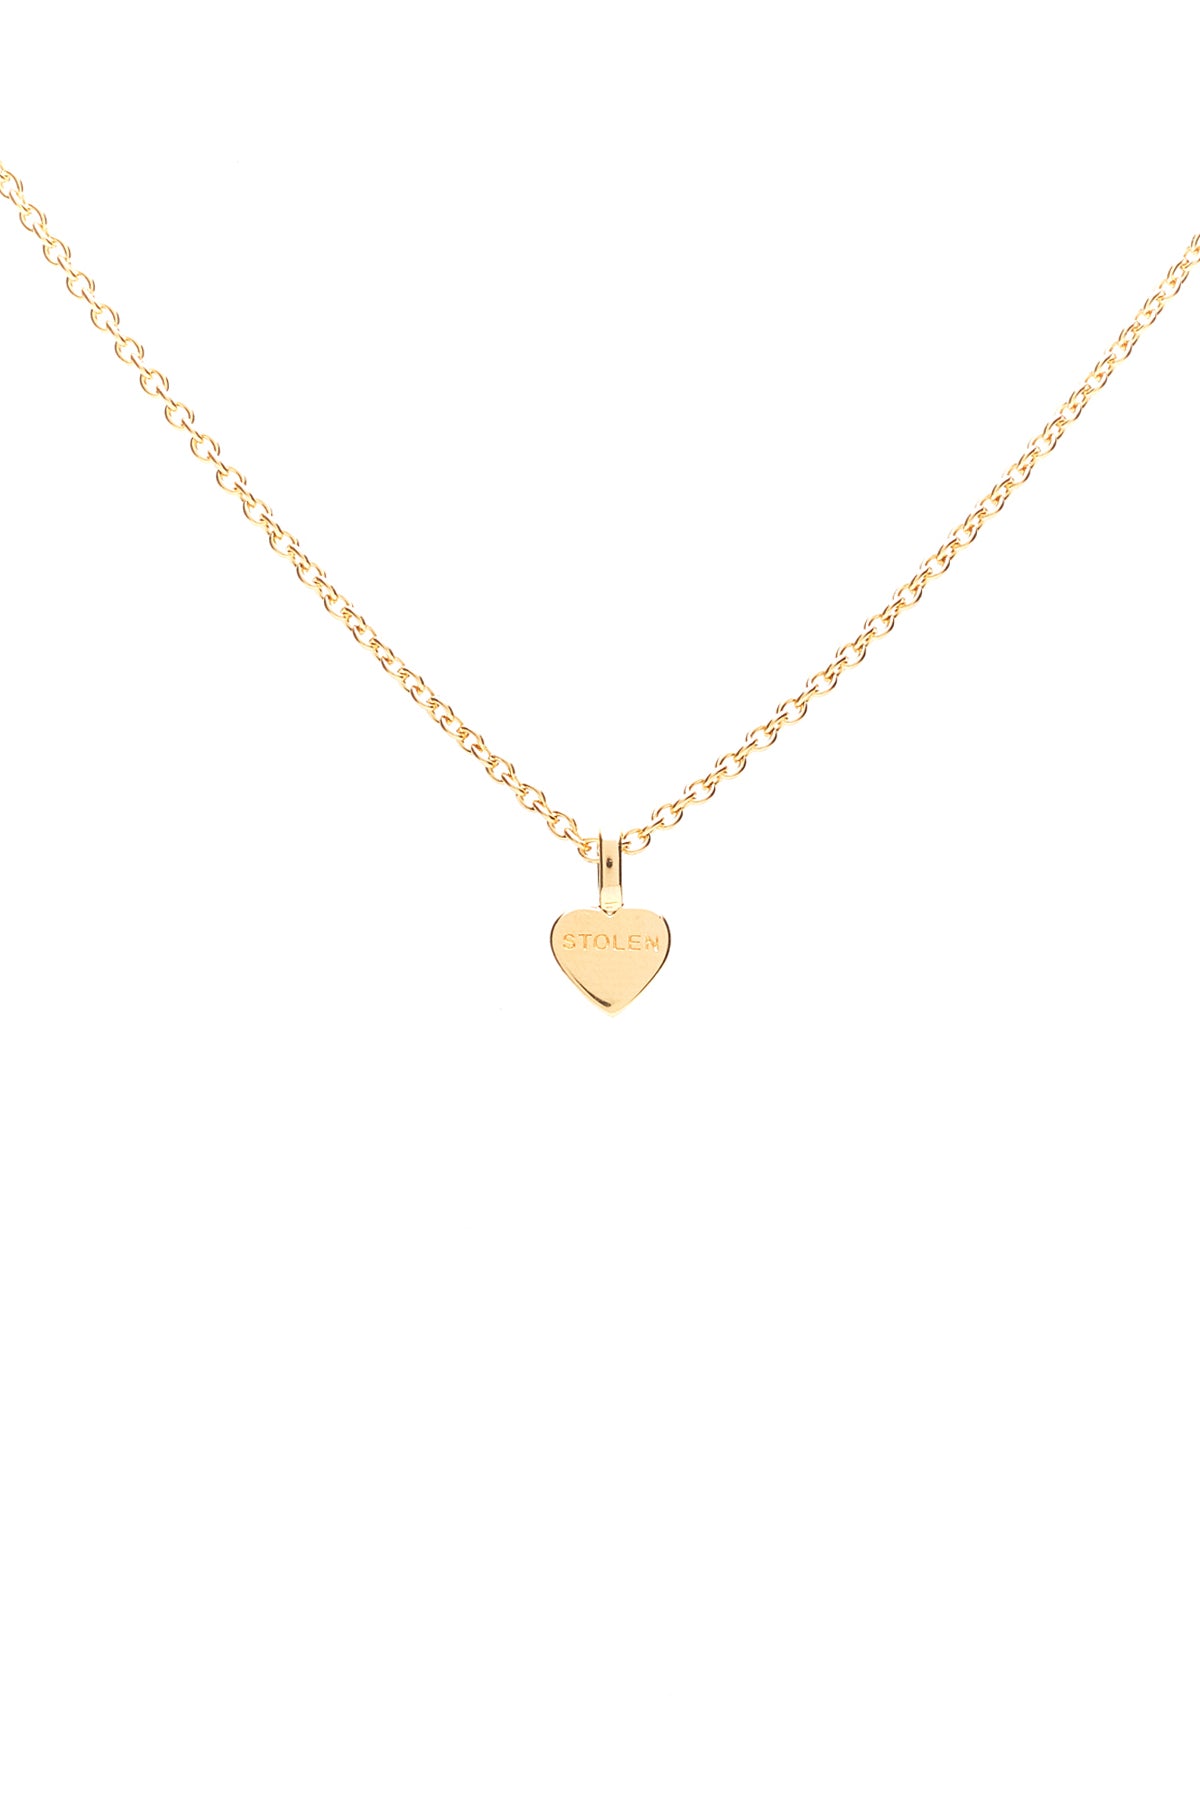 Stolen Girlfriends Club Stolen Heart Necklace - Gold